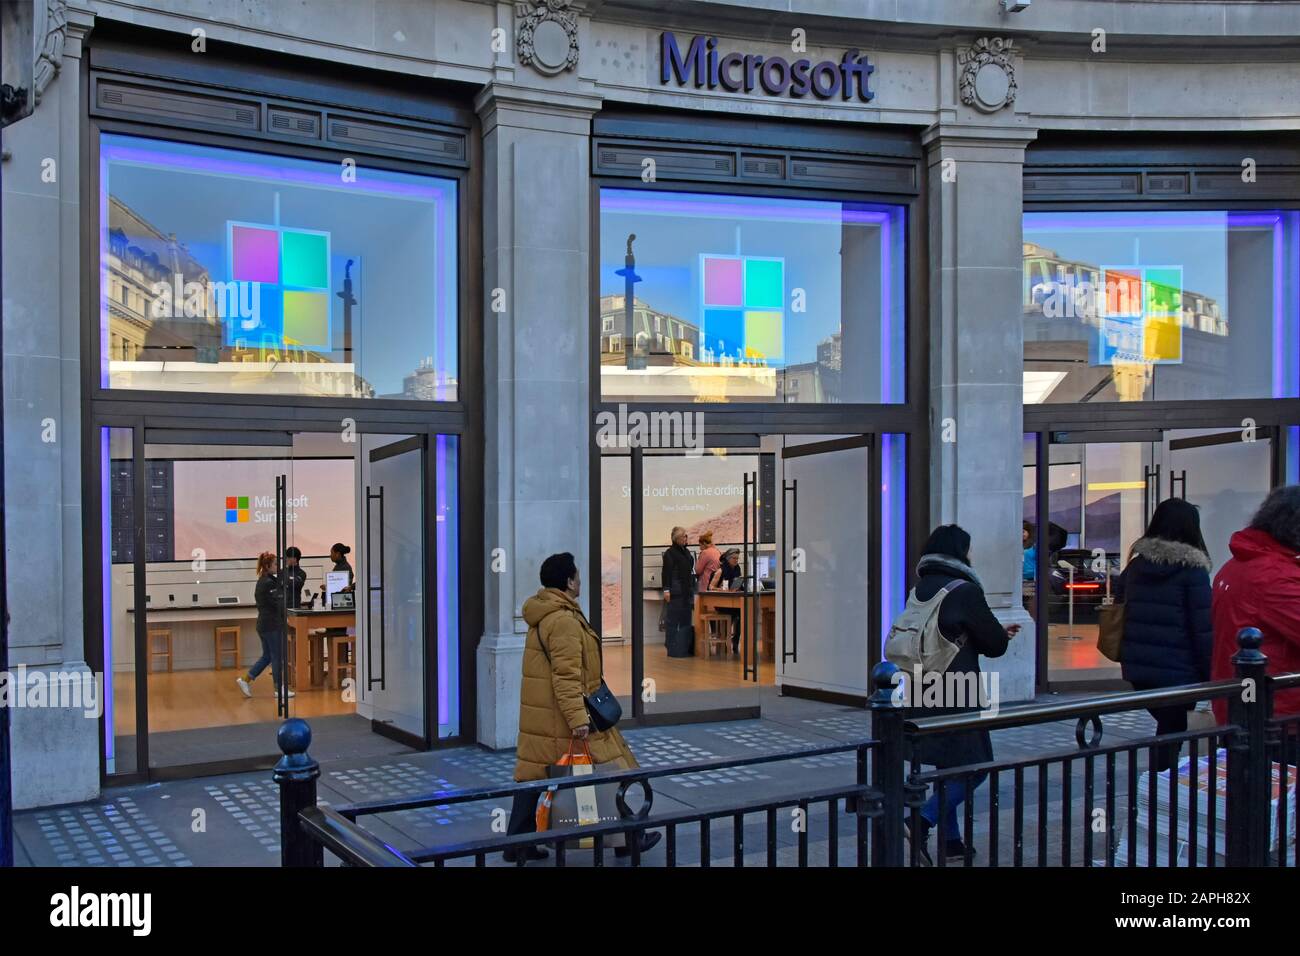 Negocio de la tienda y del showroom del minorista de Microsoft que trata en electrónica y tecnología del consumidor del software de las computadoras en Oxford Circus West End Londres Inglaterra Reino Unido Foto de stock